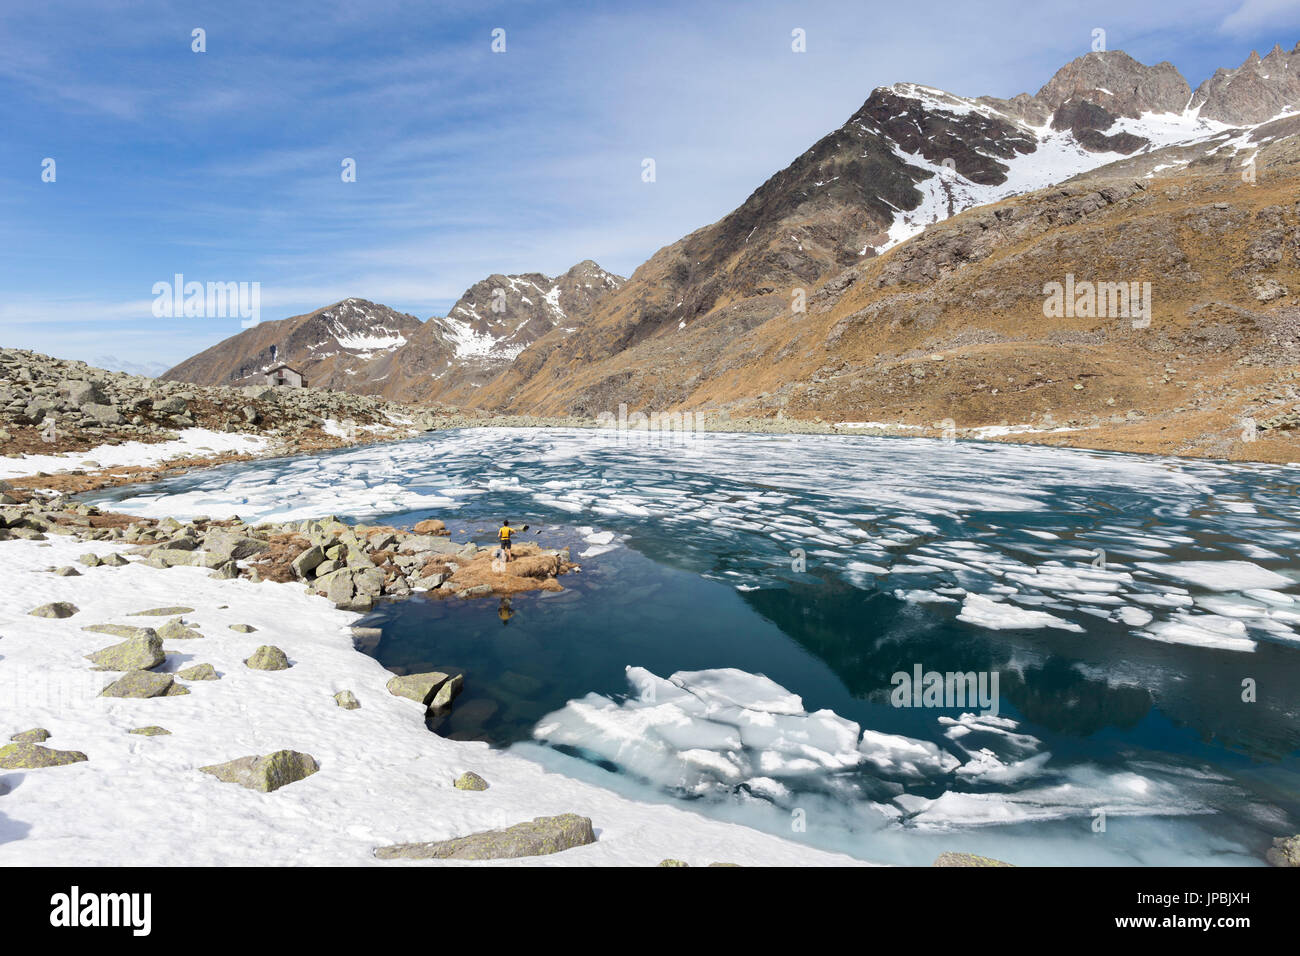 La glace et l'eau claire au Lago Rotondo au cours de dégel Malga Val Parc Régional de l'Adamello province de Brescia Lombardie Italie Europe Banque D'Images